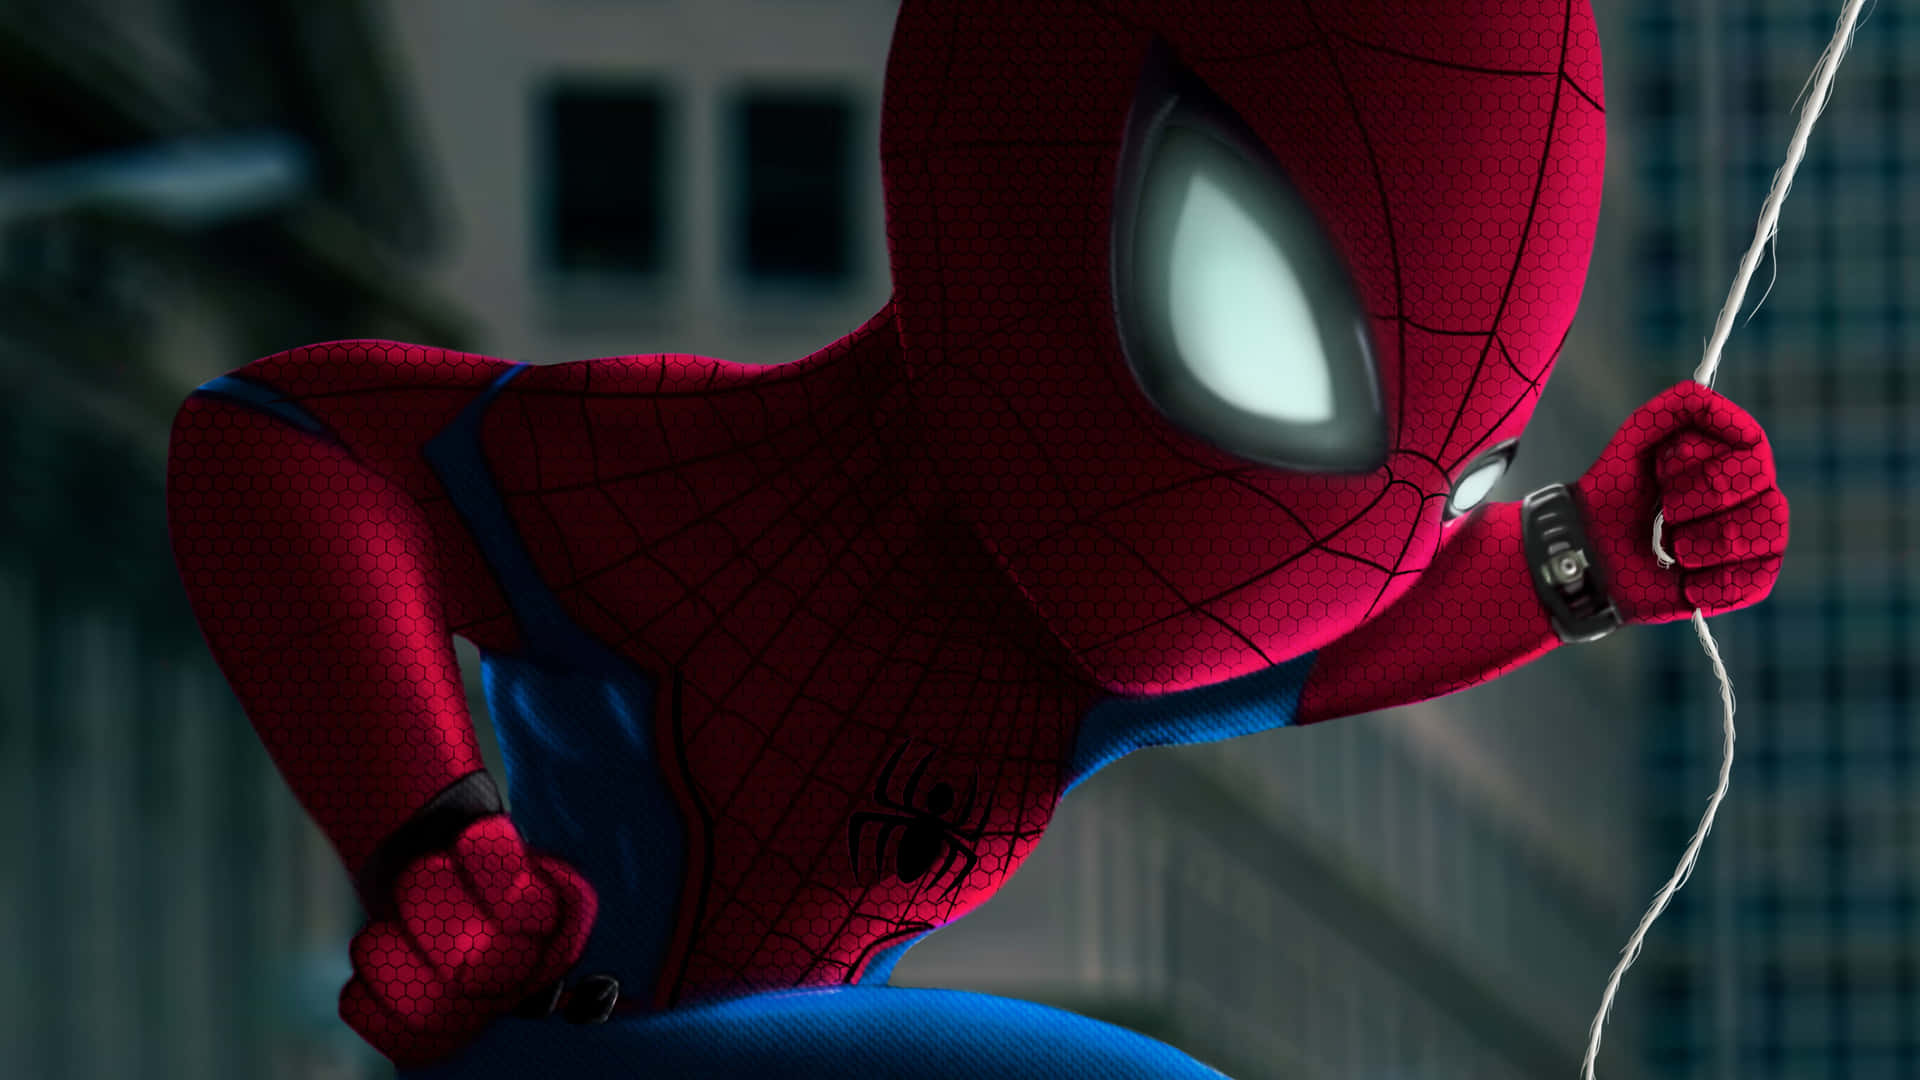 Spiderman Balanceándose A Través De La Ciudad. Fondo de pantalla